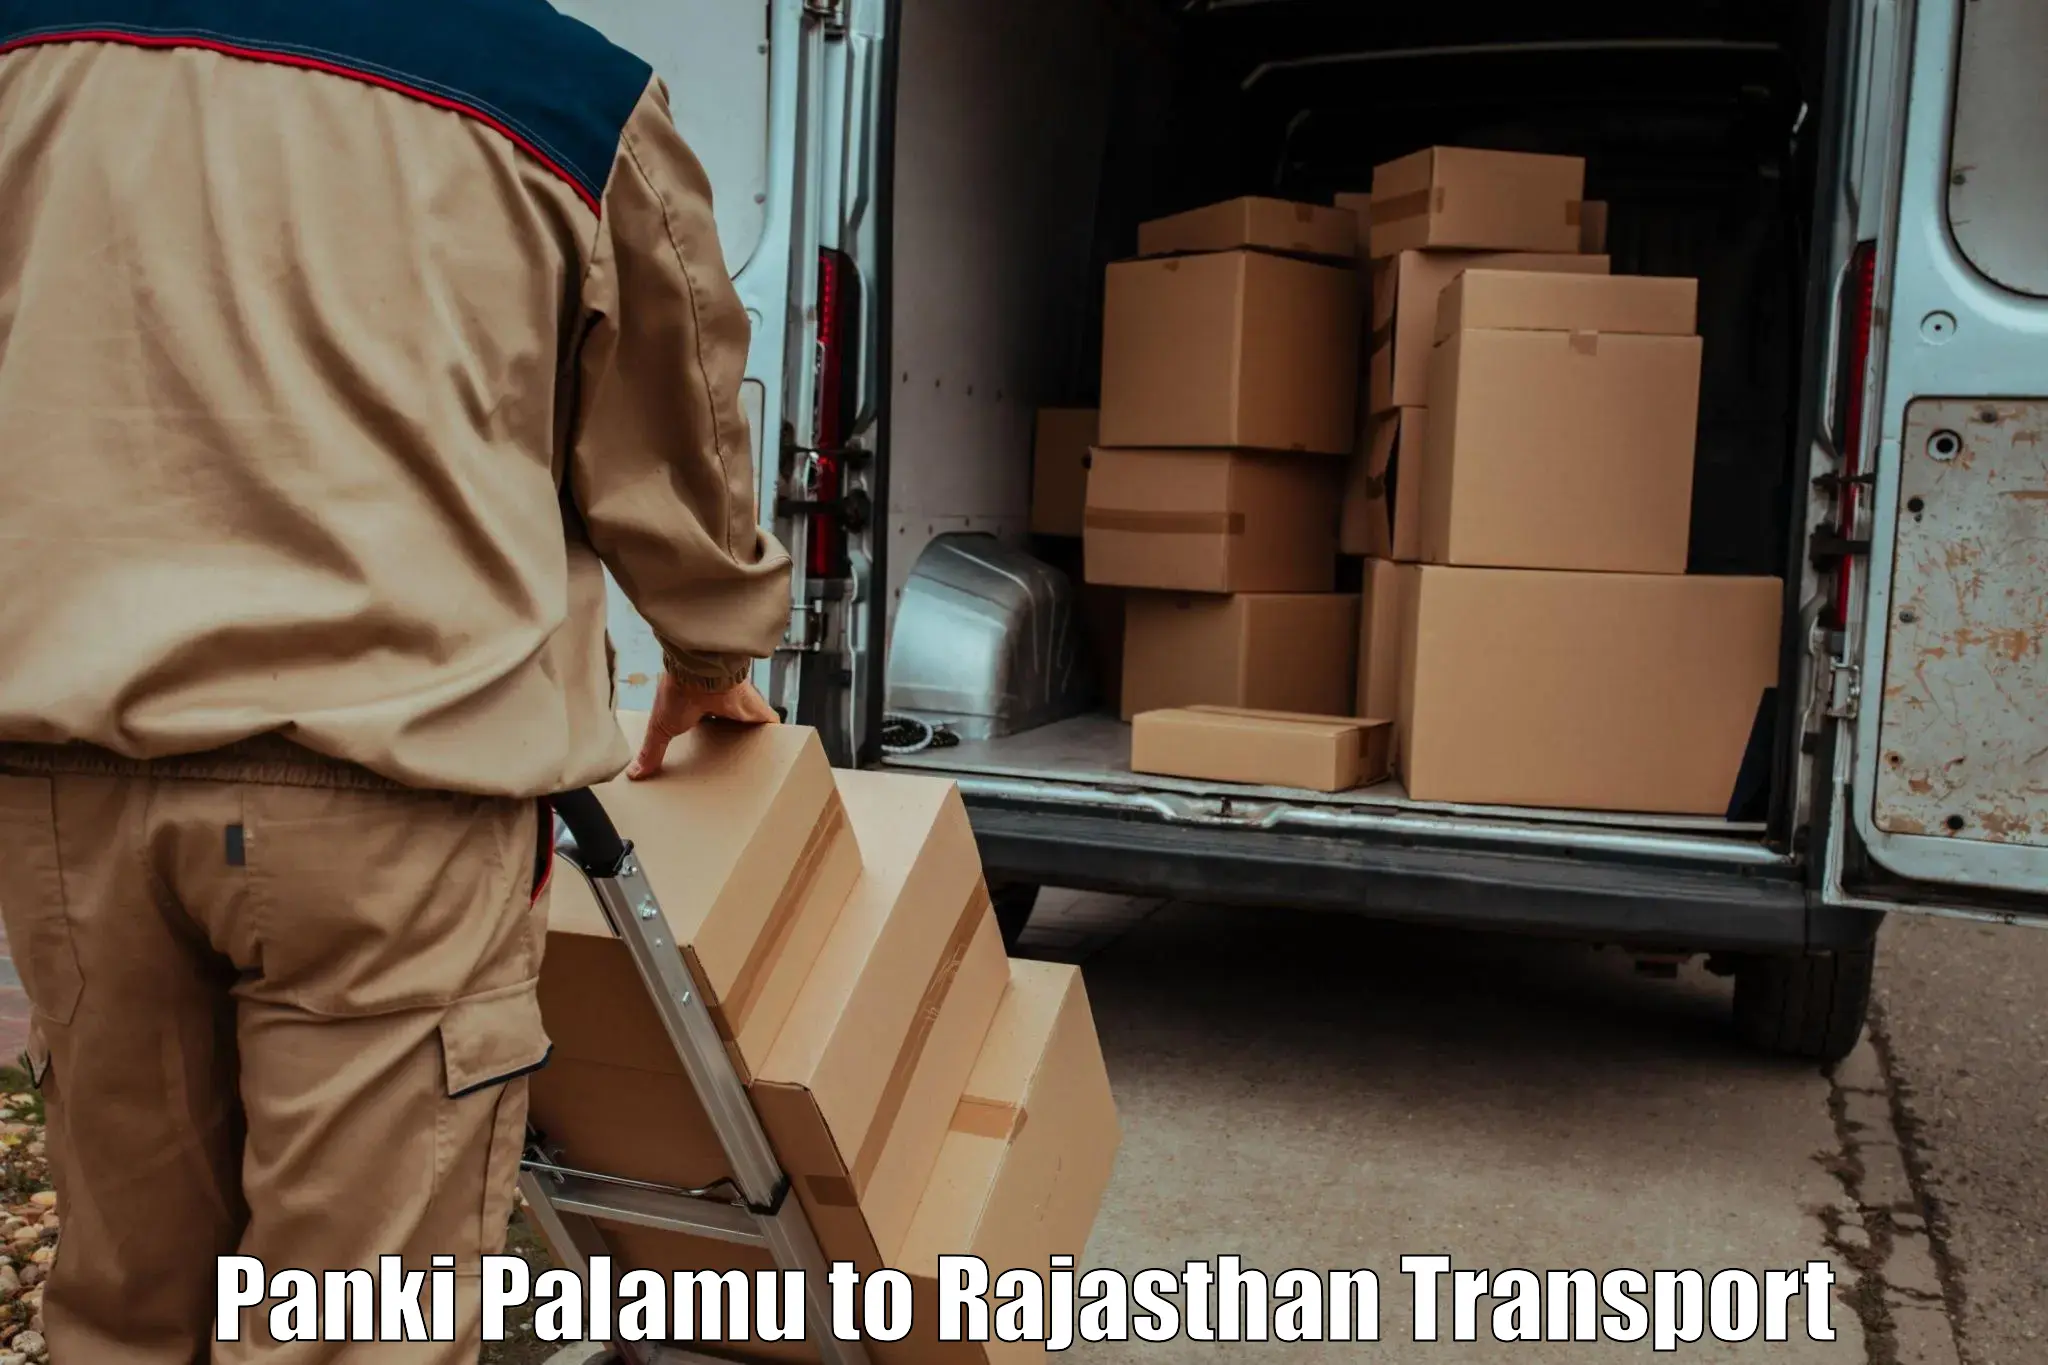 Cargo train transport services Panki Palamu to Rajasthan